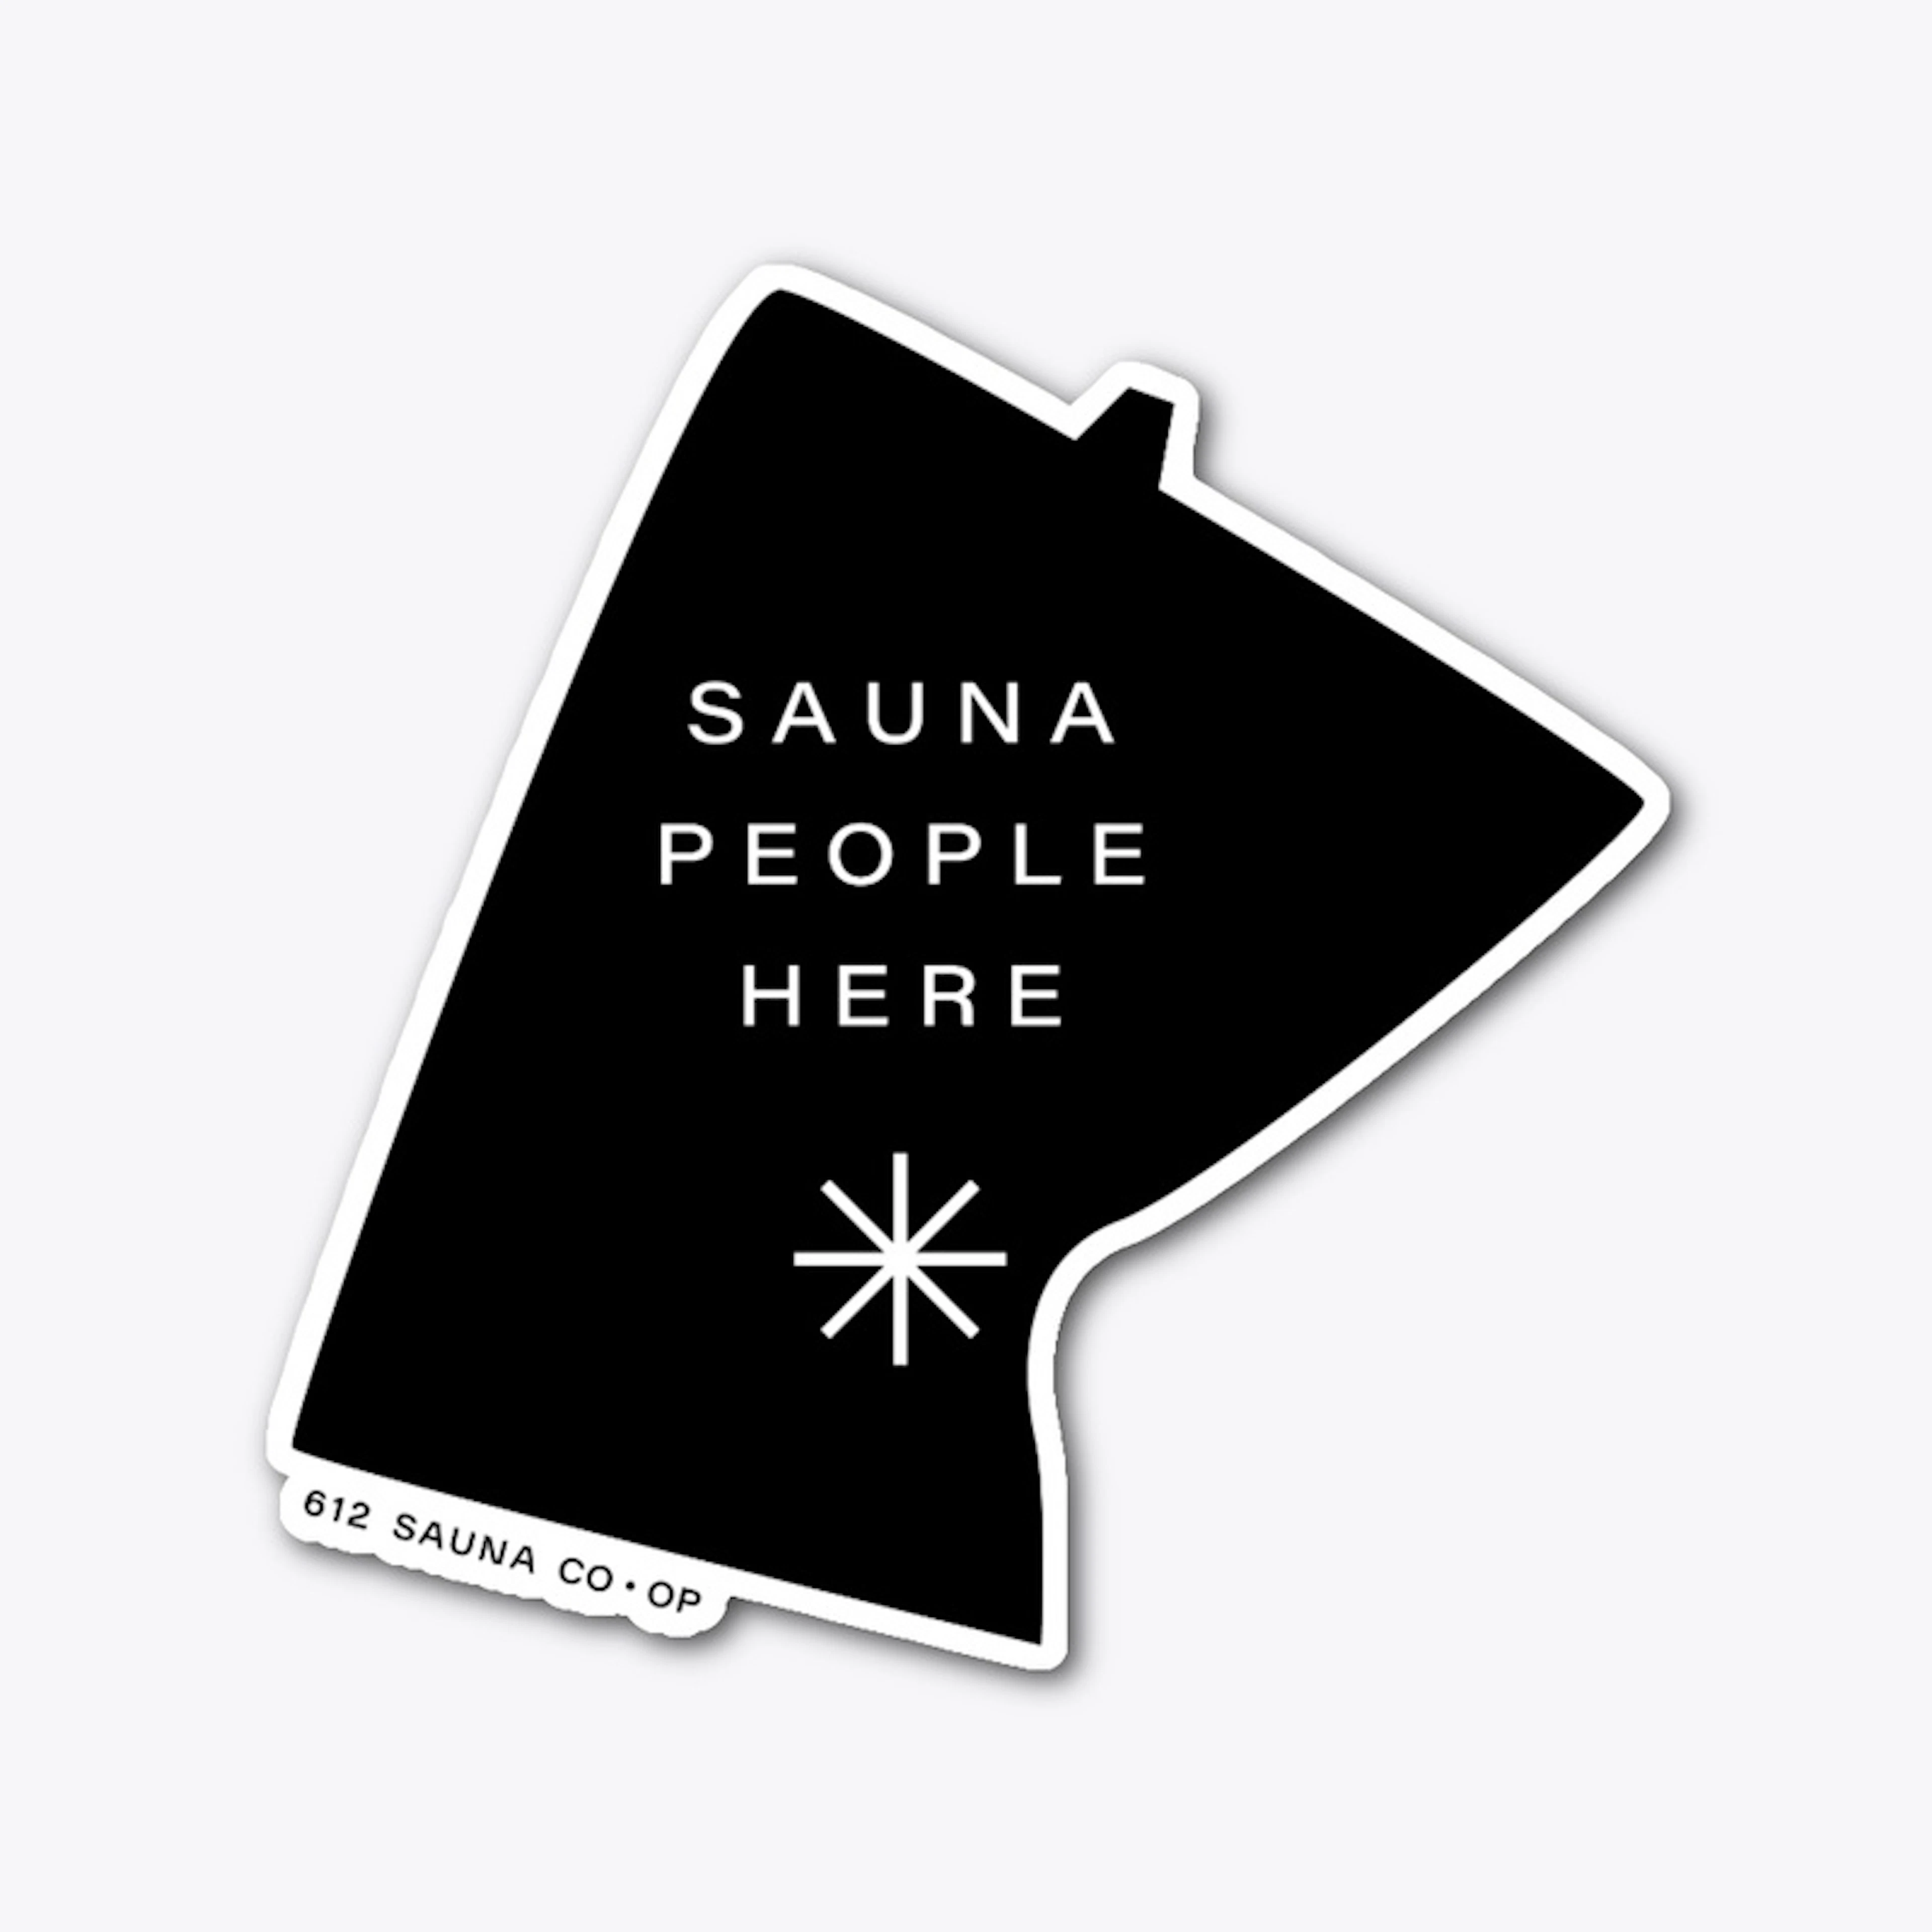 Sauna People Here Sticker